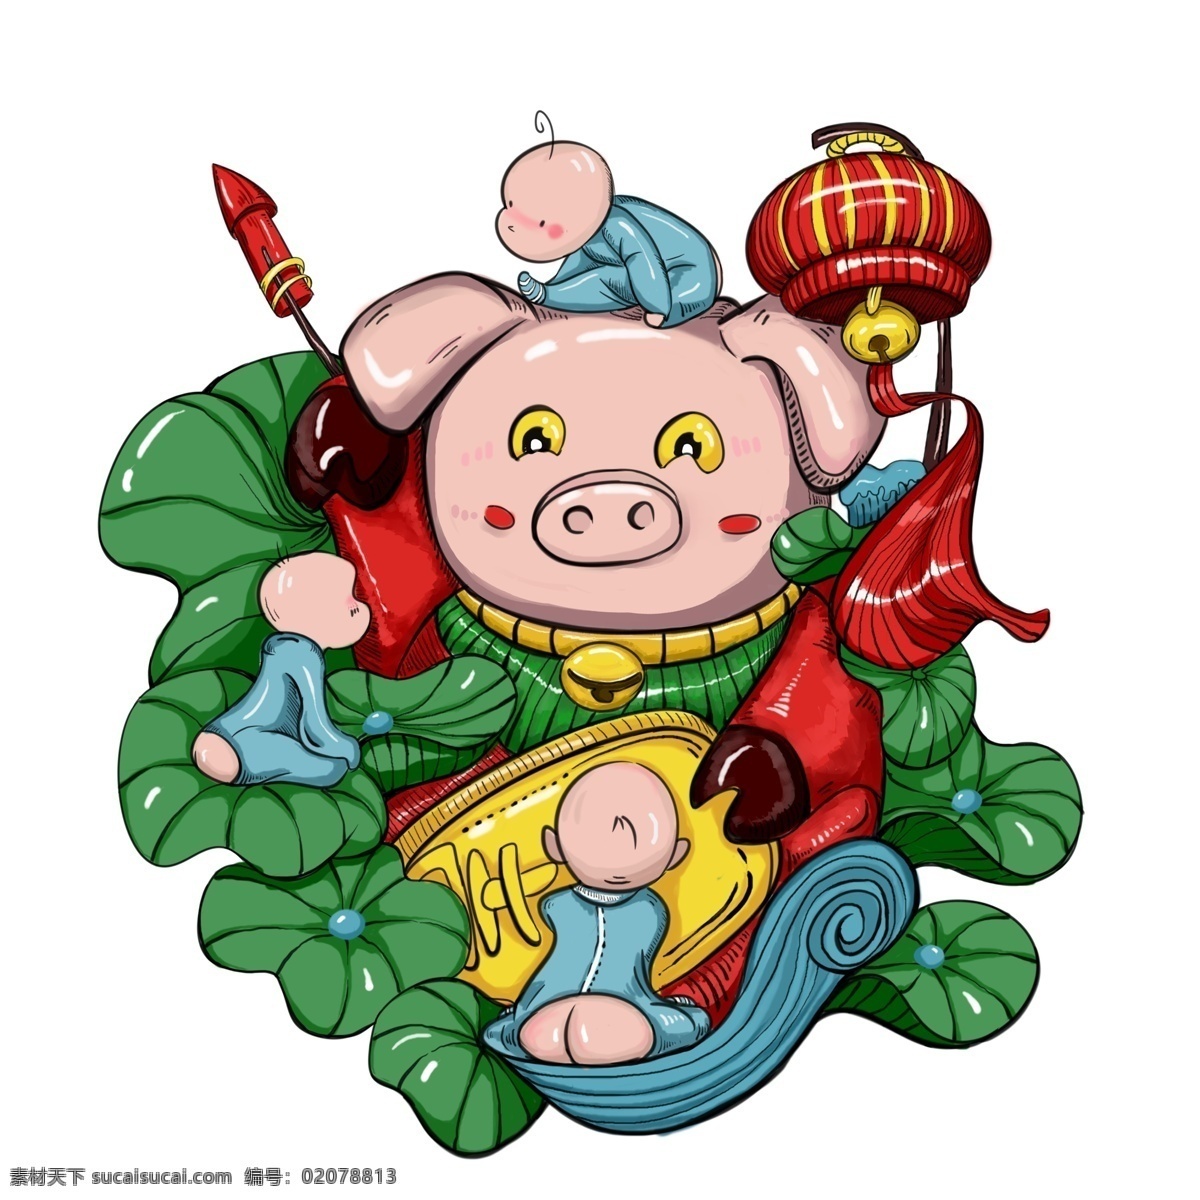 潮 漫 猪年 招 财 童子 彩绘 卡通 插画 喜庆 过年 潮漫 招财童子 2019年 小猪形象 猪年形象